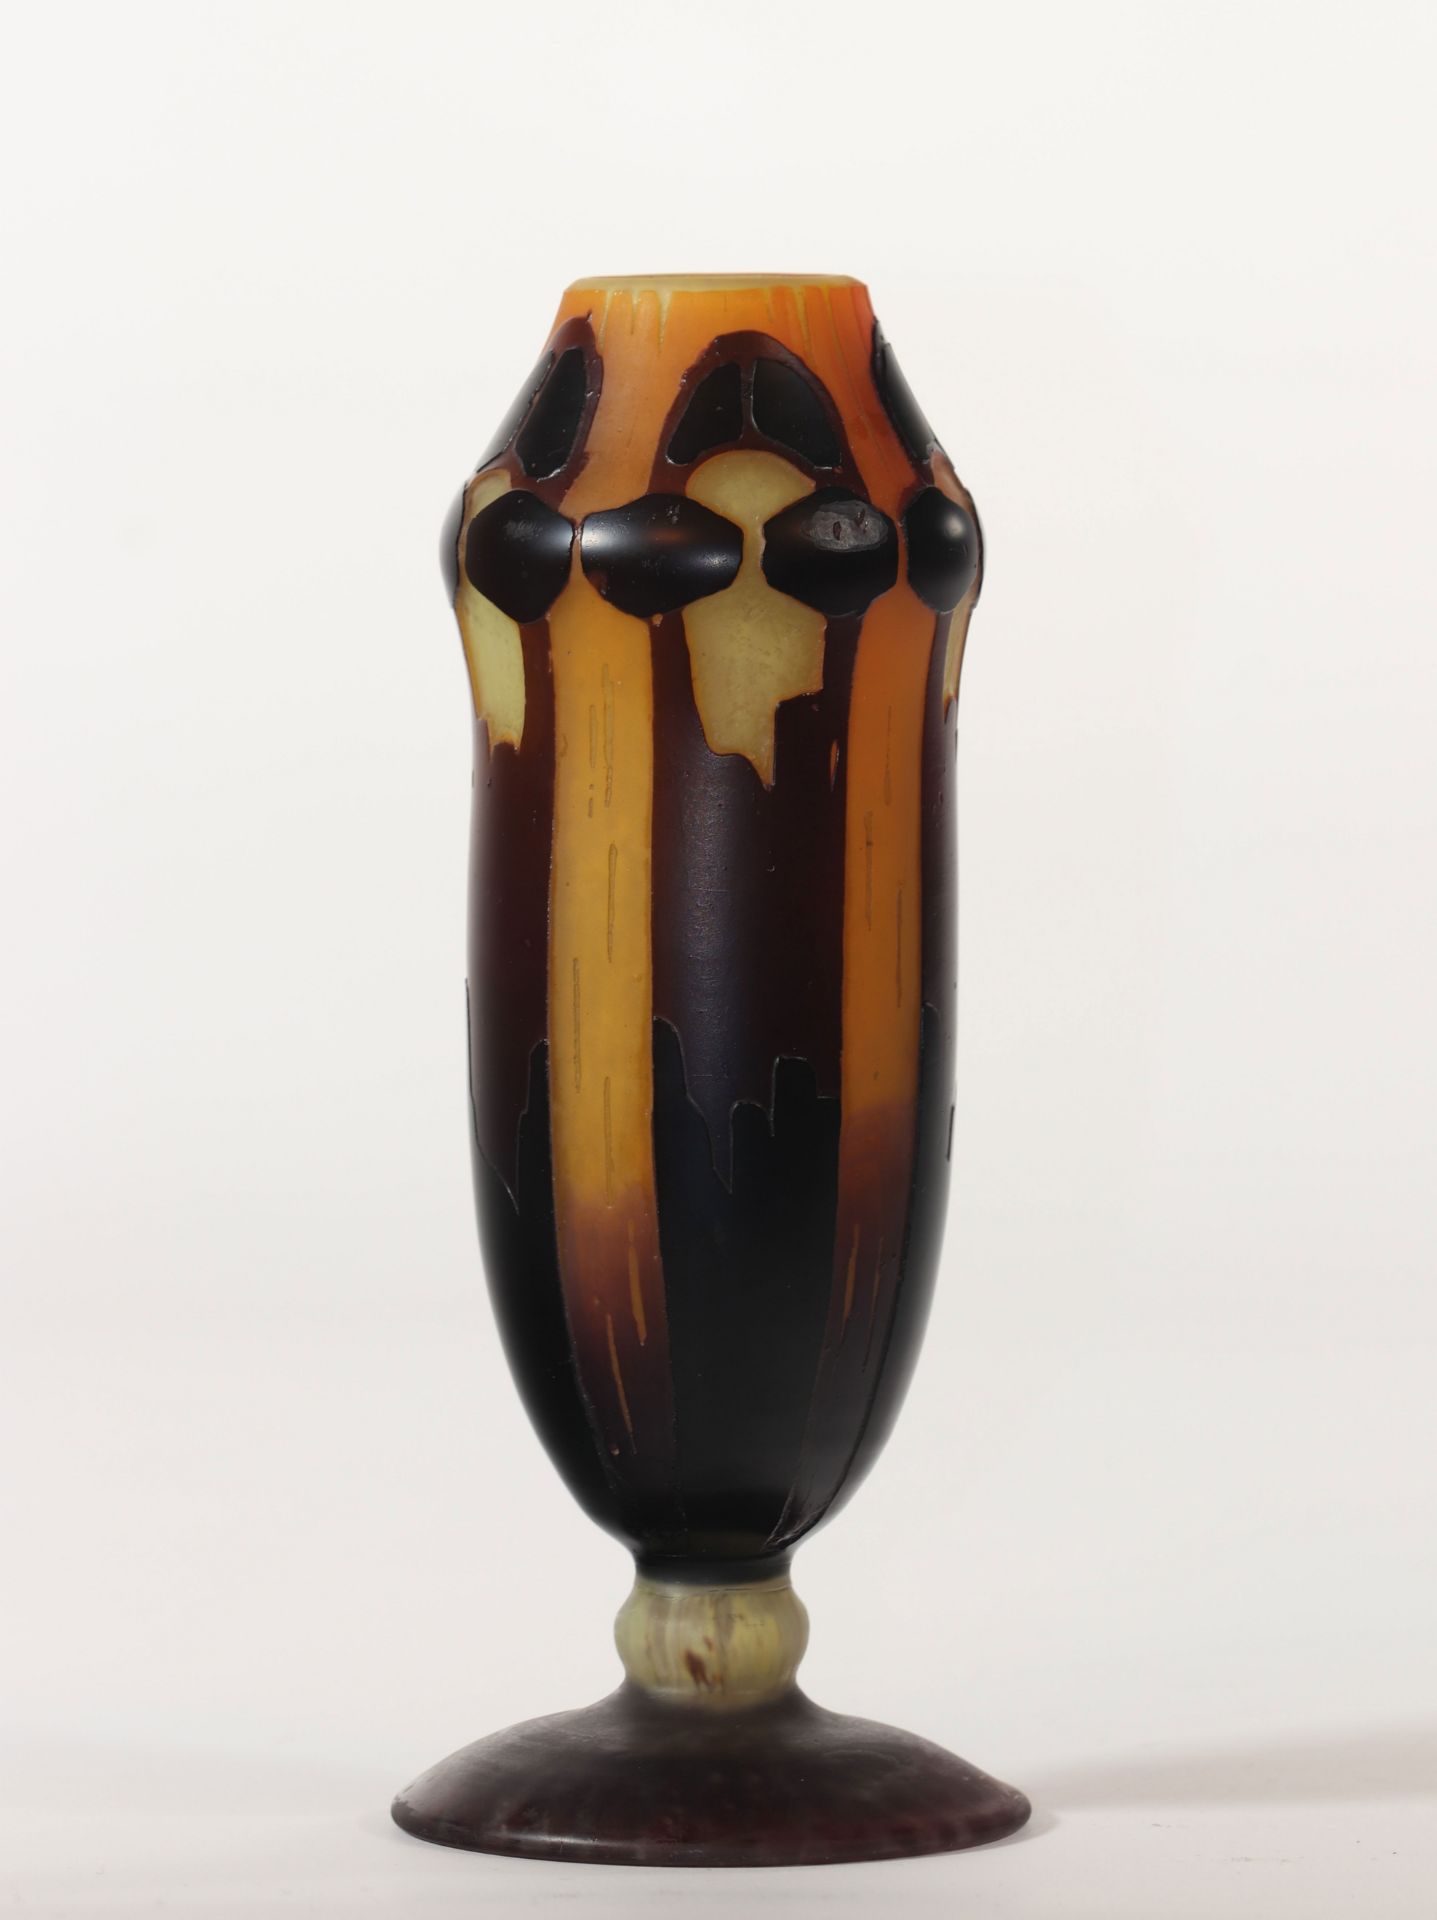 Schneider Art Deco free standing vase with acid